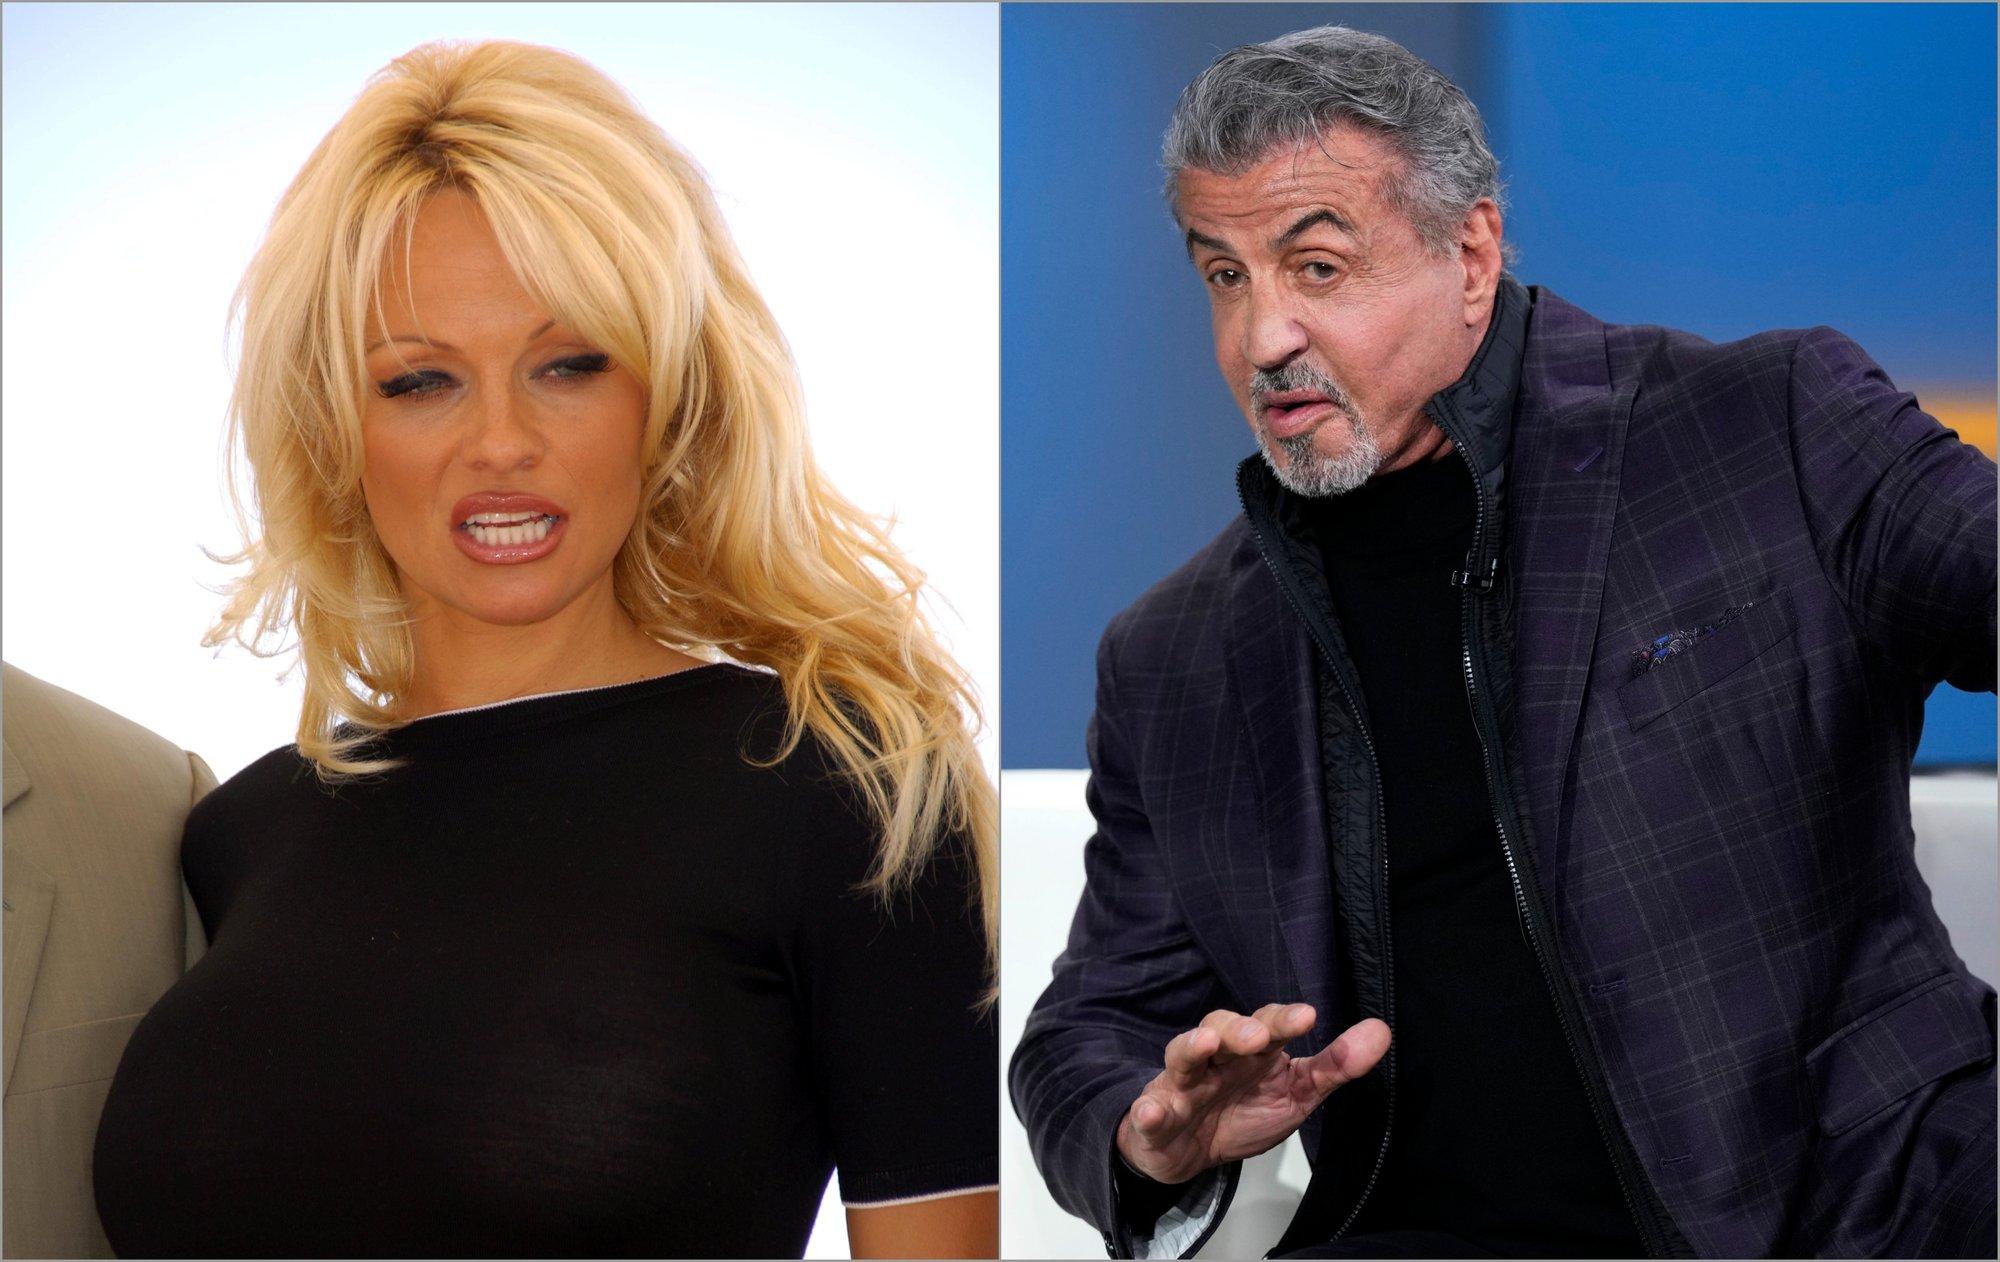 Pamela Anderson prabilo apie iš Sylvesterio Stallone gautą įžūlų pasiūlymą: aktoriaus atstovai suskubo informaciją neigti